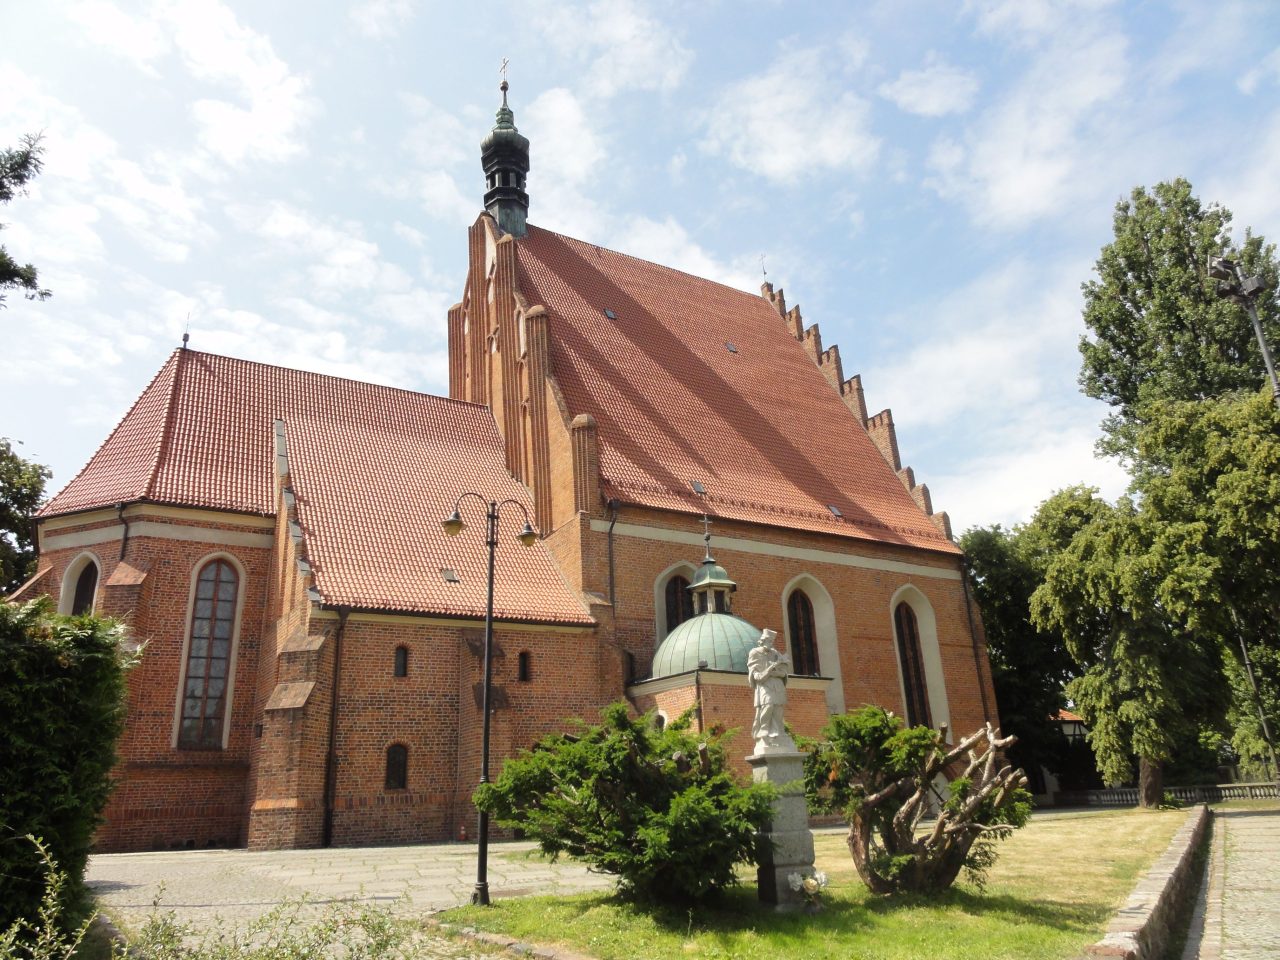 Katedrala u Bydgoszczu/Foto: Joczko, CC BY-SA 4.0/Wikimedia Commons